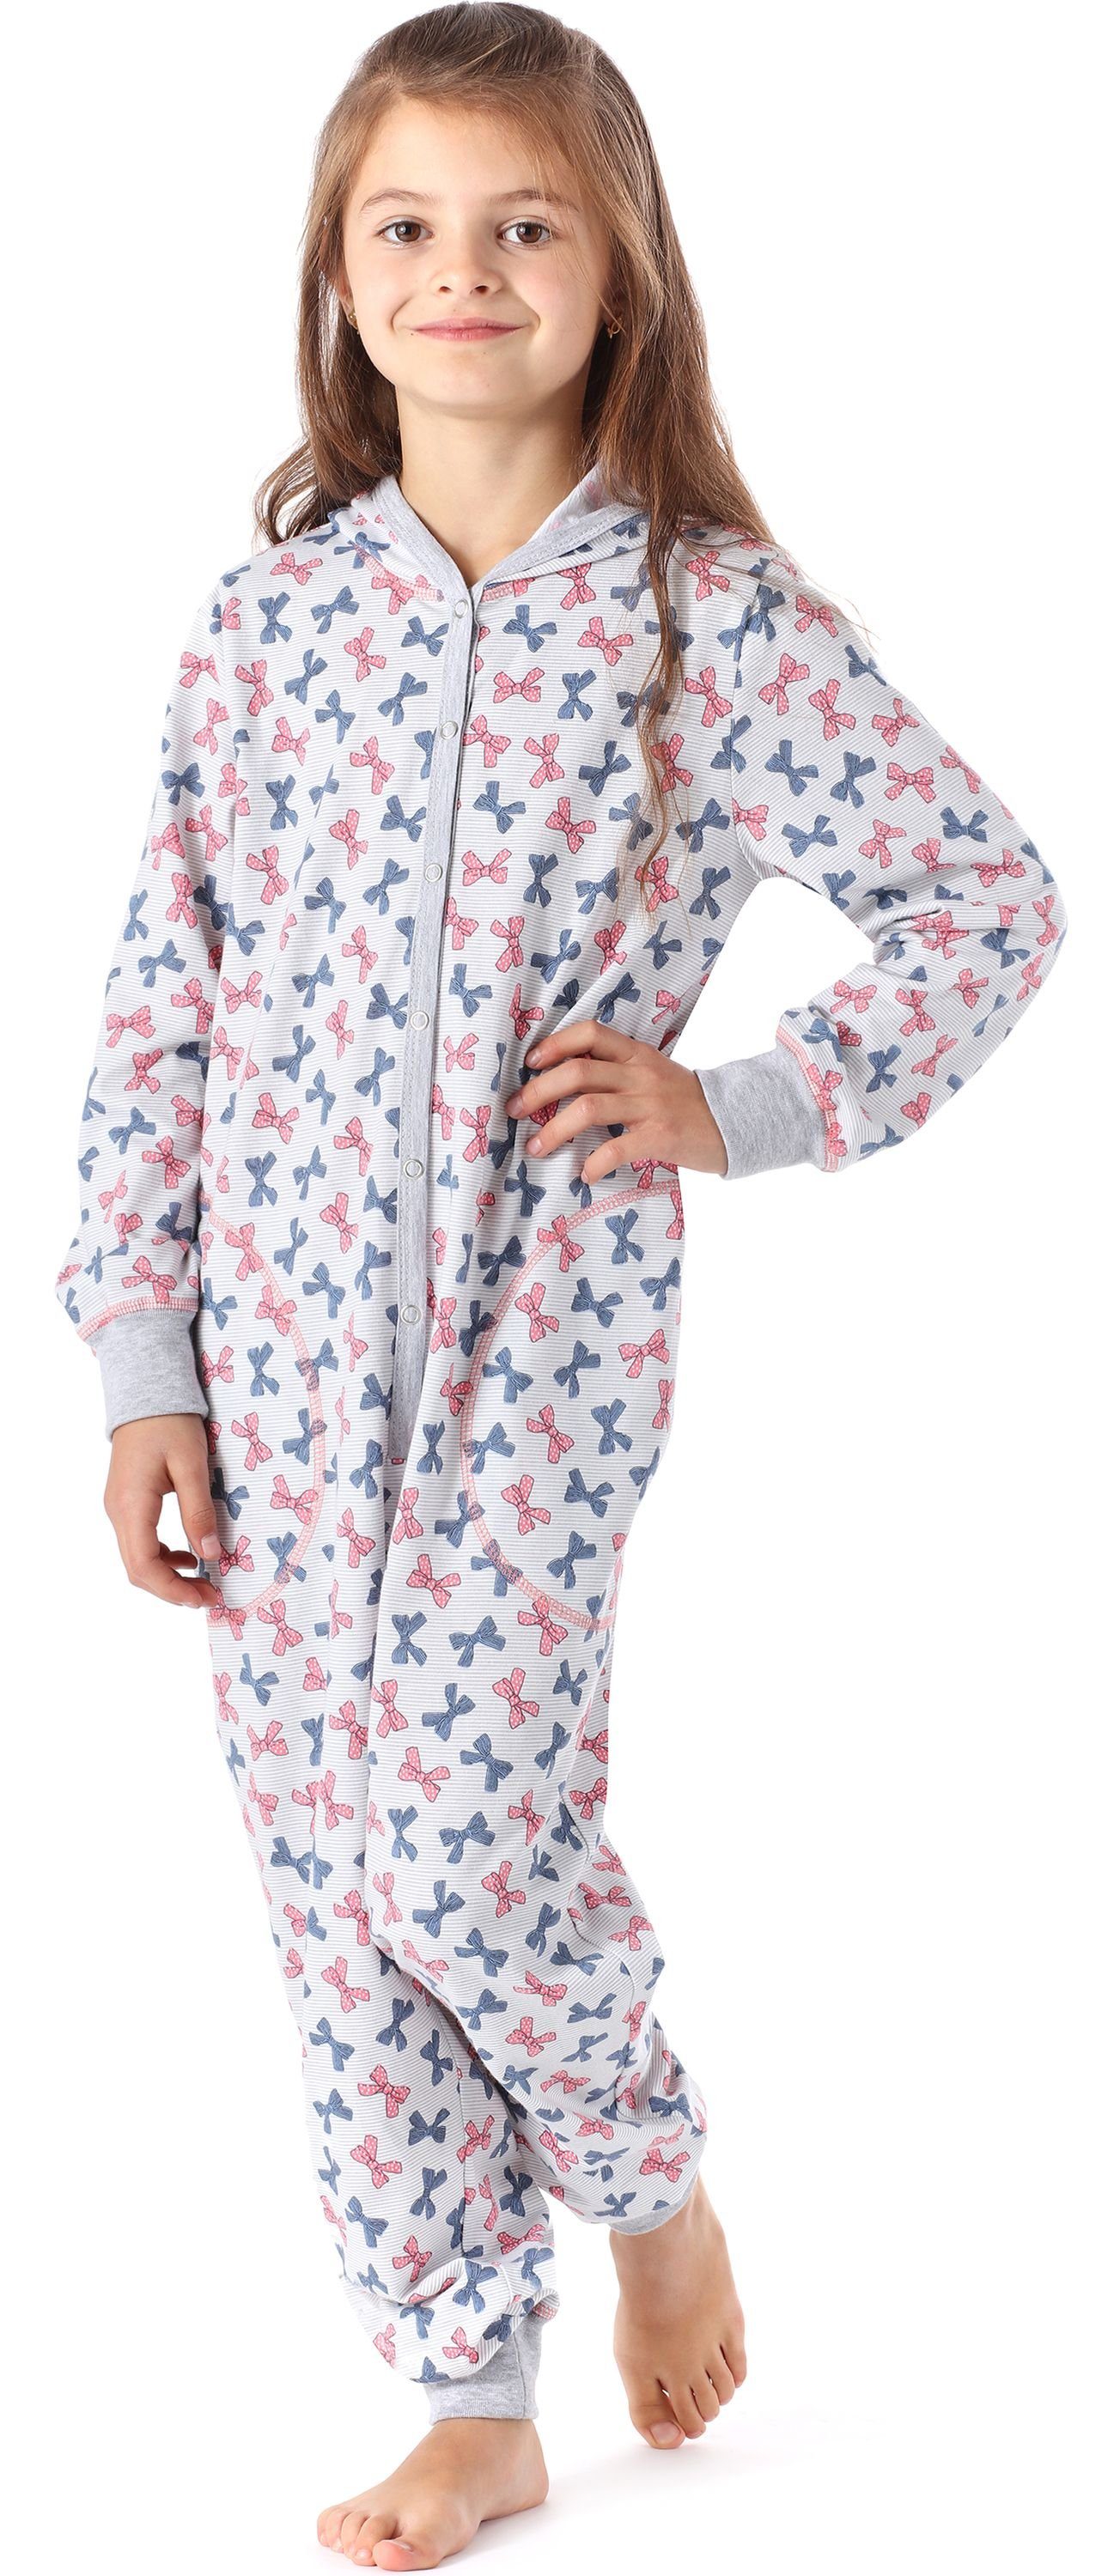 Bögen MS10-223 mit Merry Style Schlafanzug Schlafoverall Melange Mädchen Kapuze